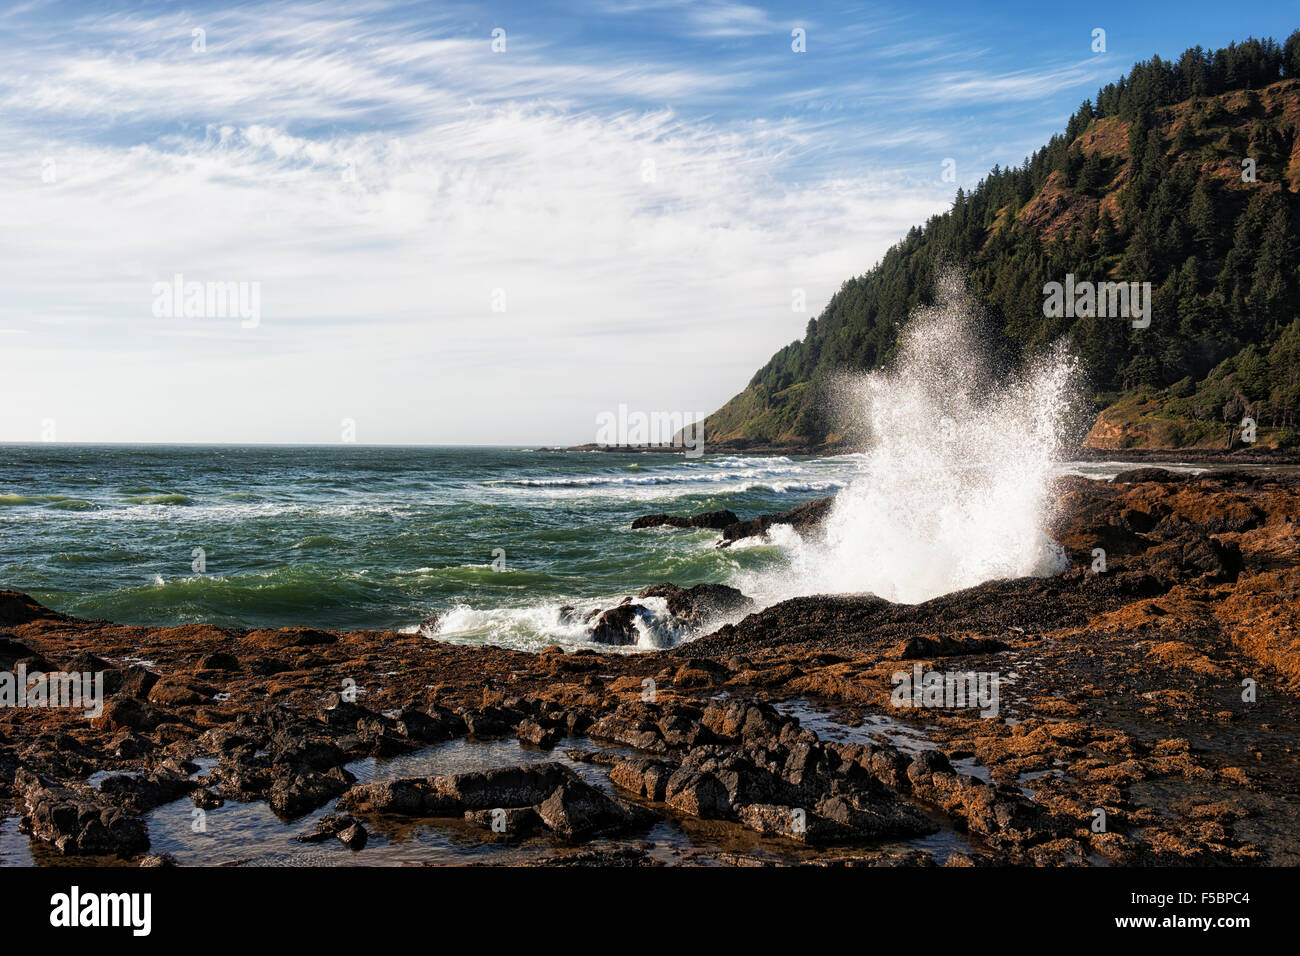 Les voisins musicaux de vagues contre la côte rocheuse de l'Oregon's Cape Perpetua Scenic Area. Banque D'Images